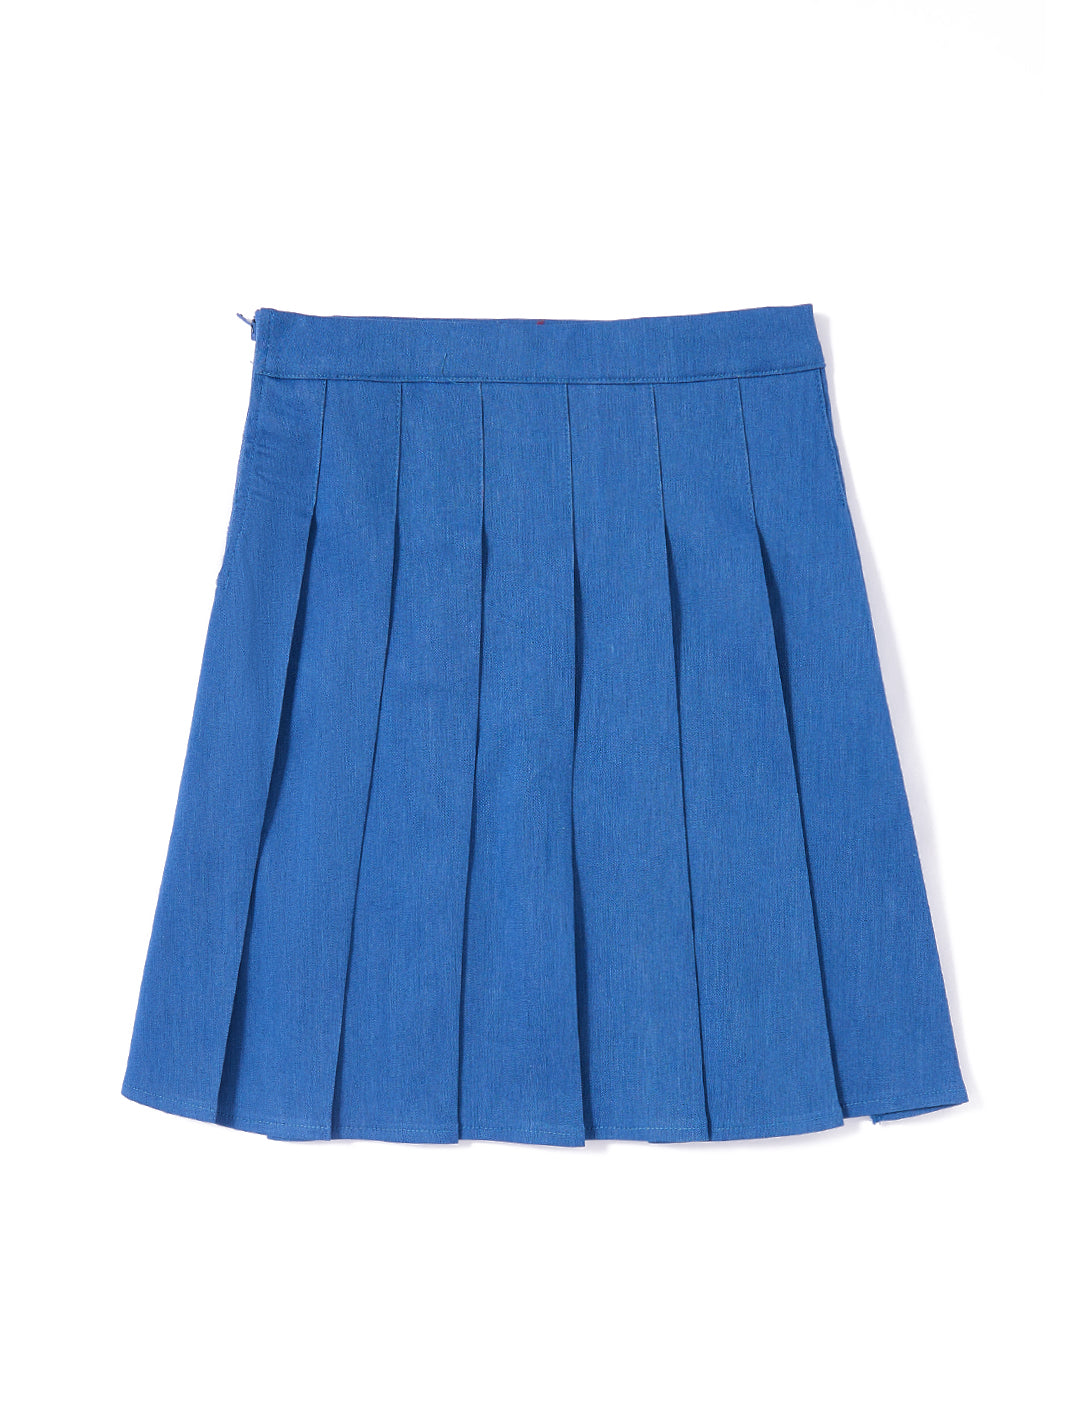 Denim Pleated Skirt - Lt. Blue